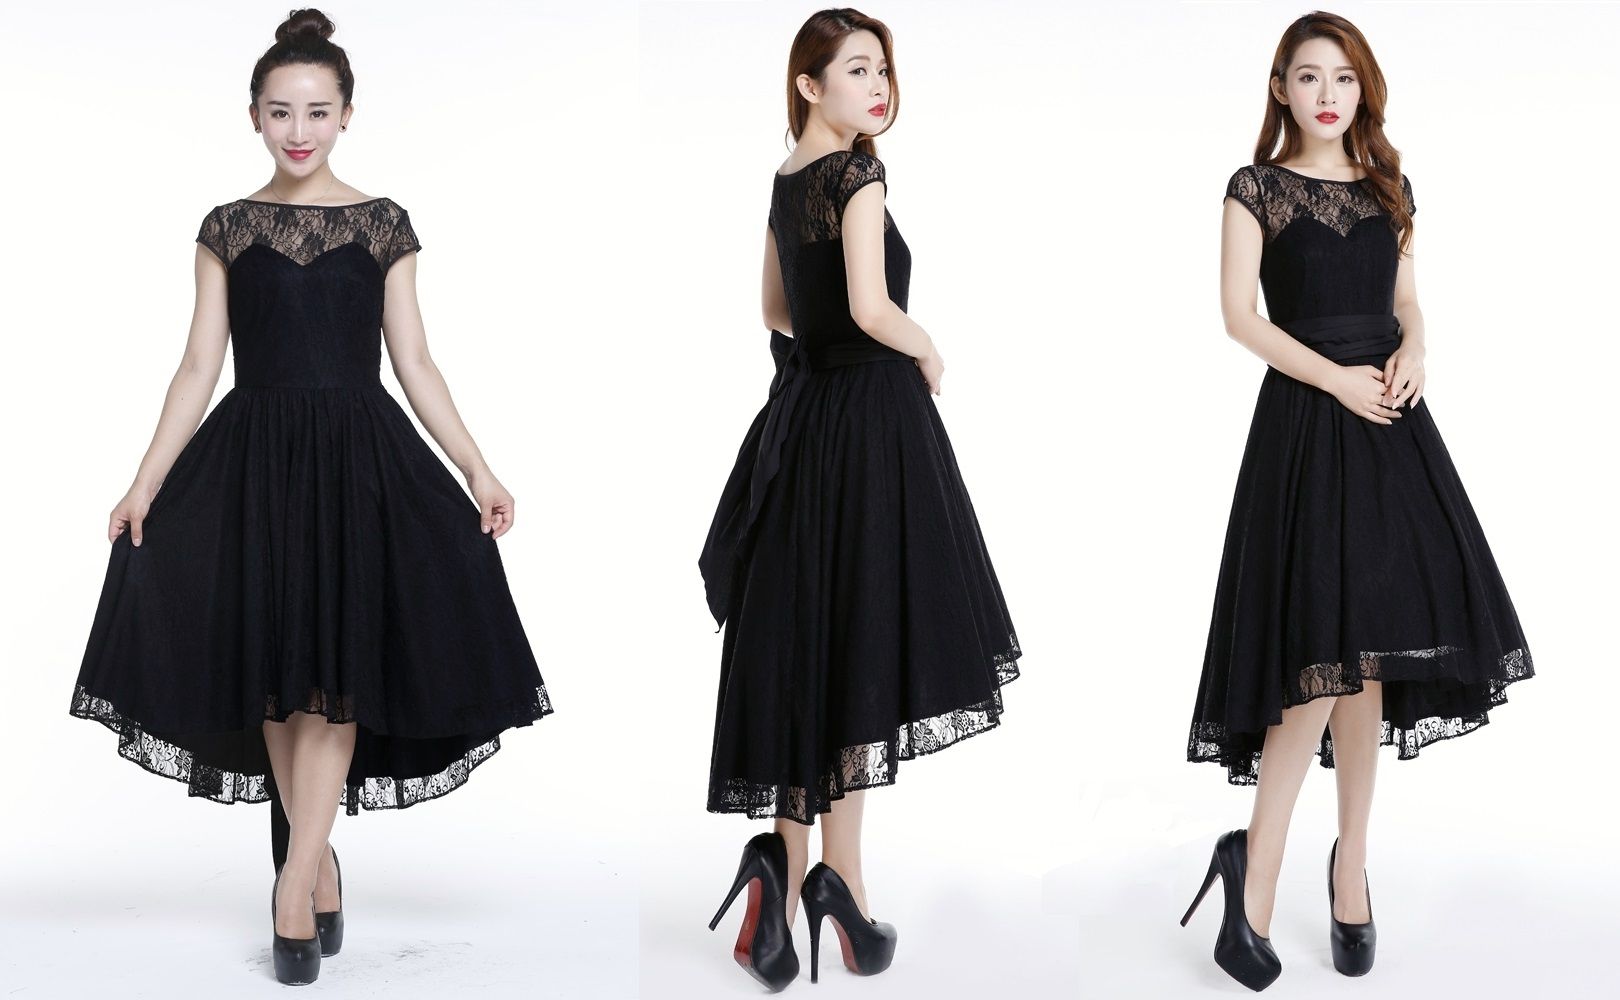 Gotické šaty dámské Evelyn černé